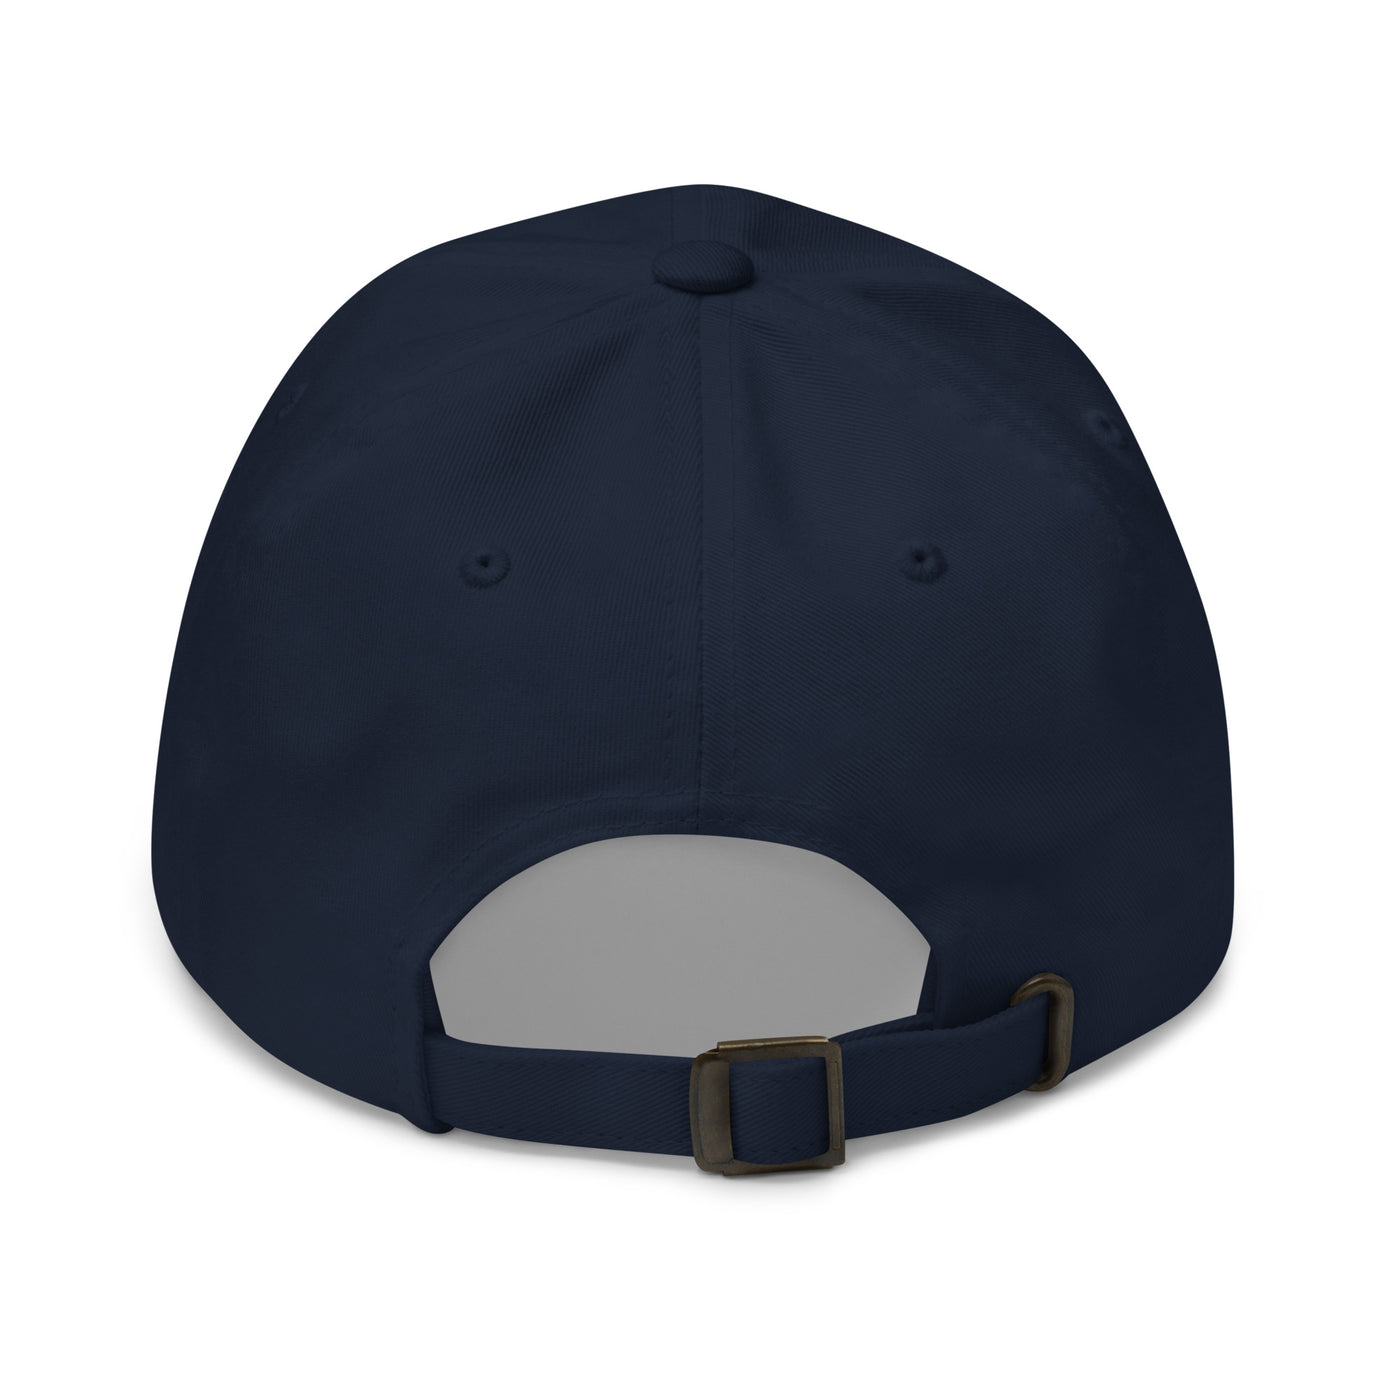 Focus Unisex Hat